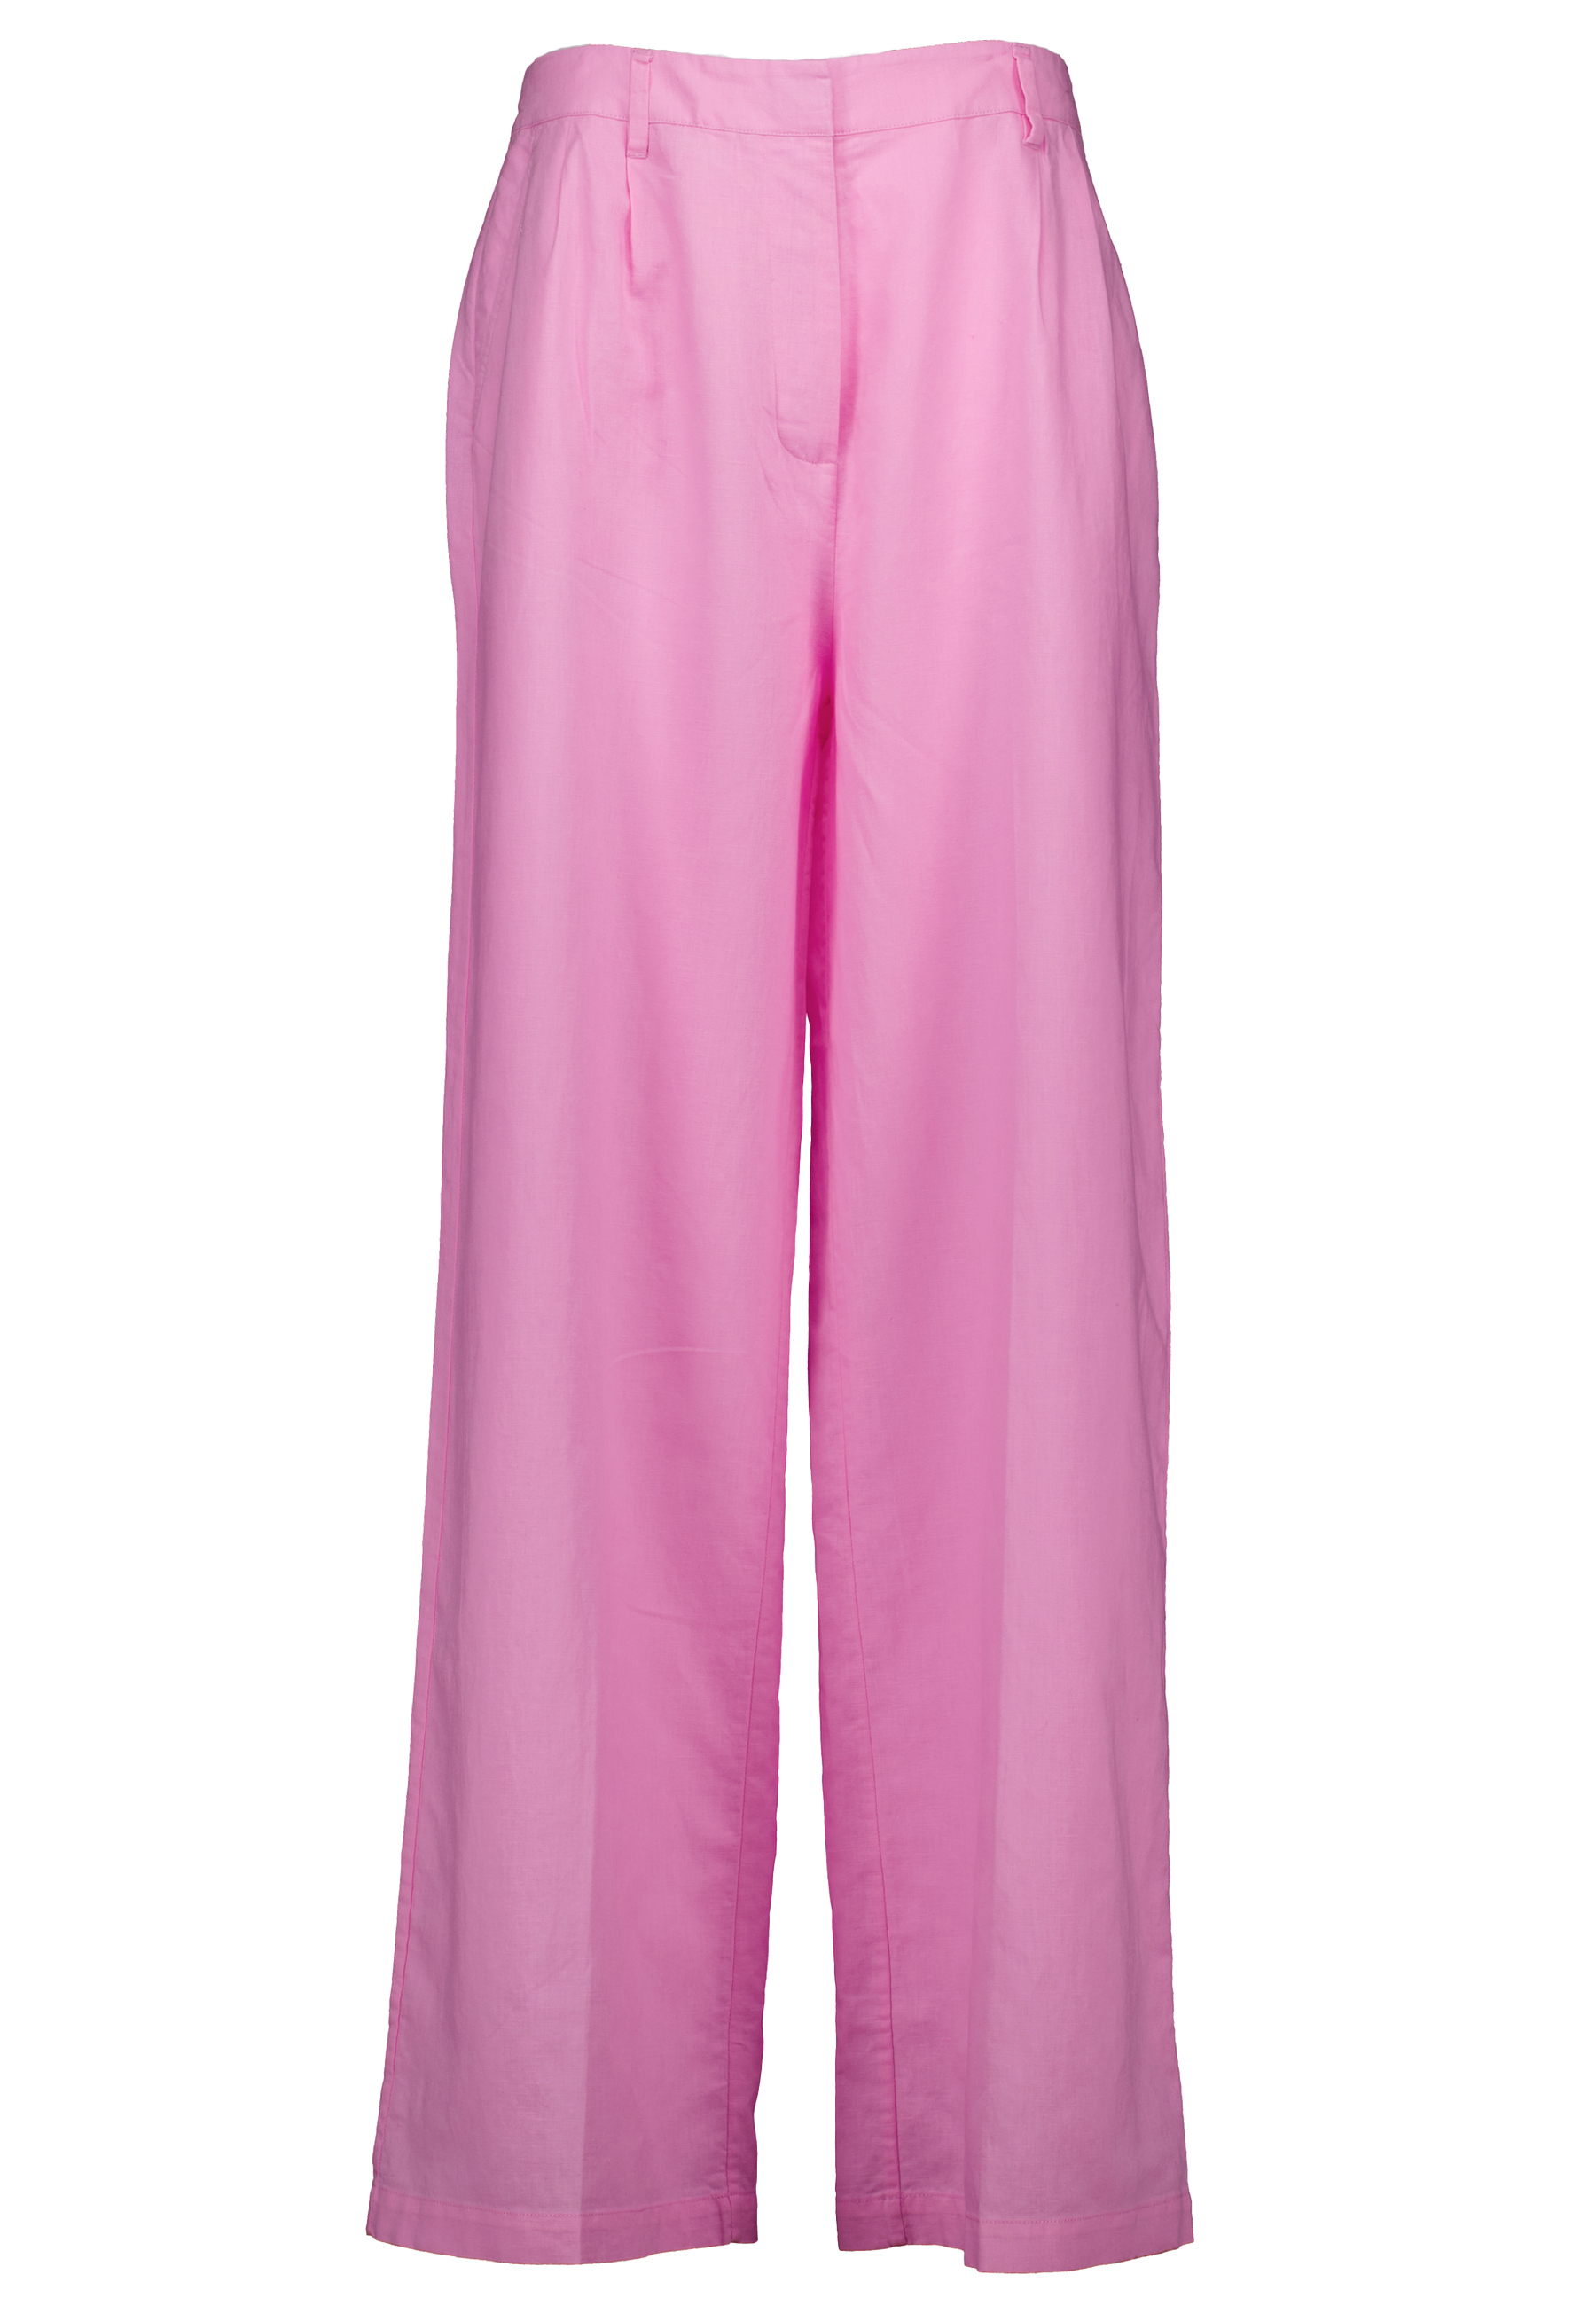 Broek Roze Hose pantalons roze